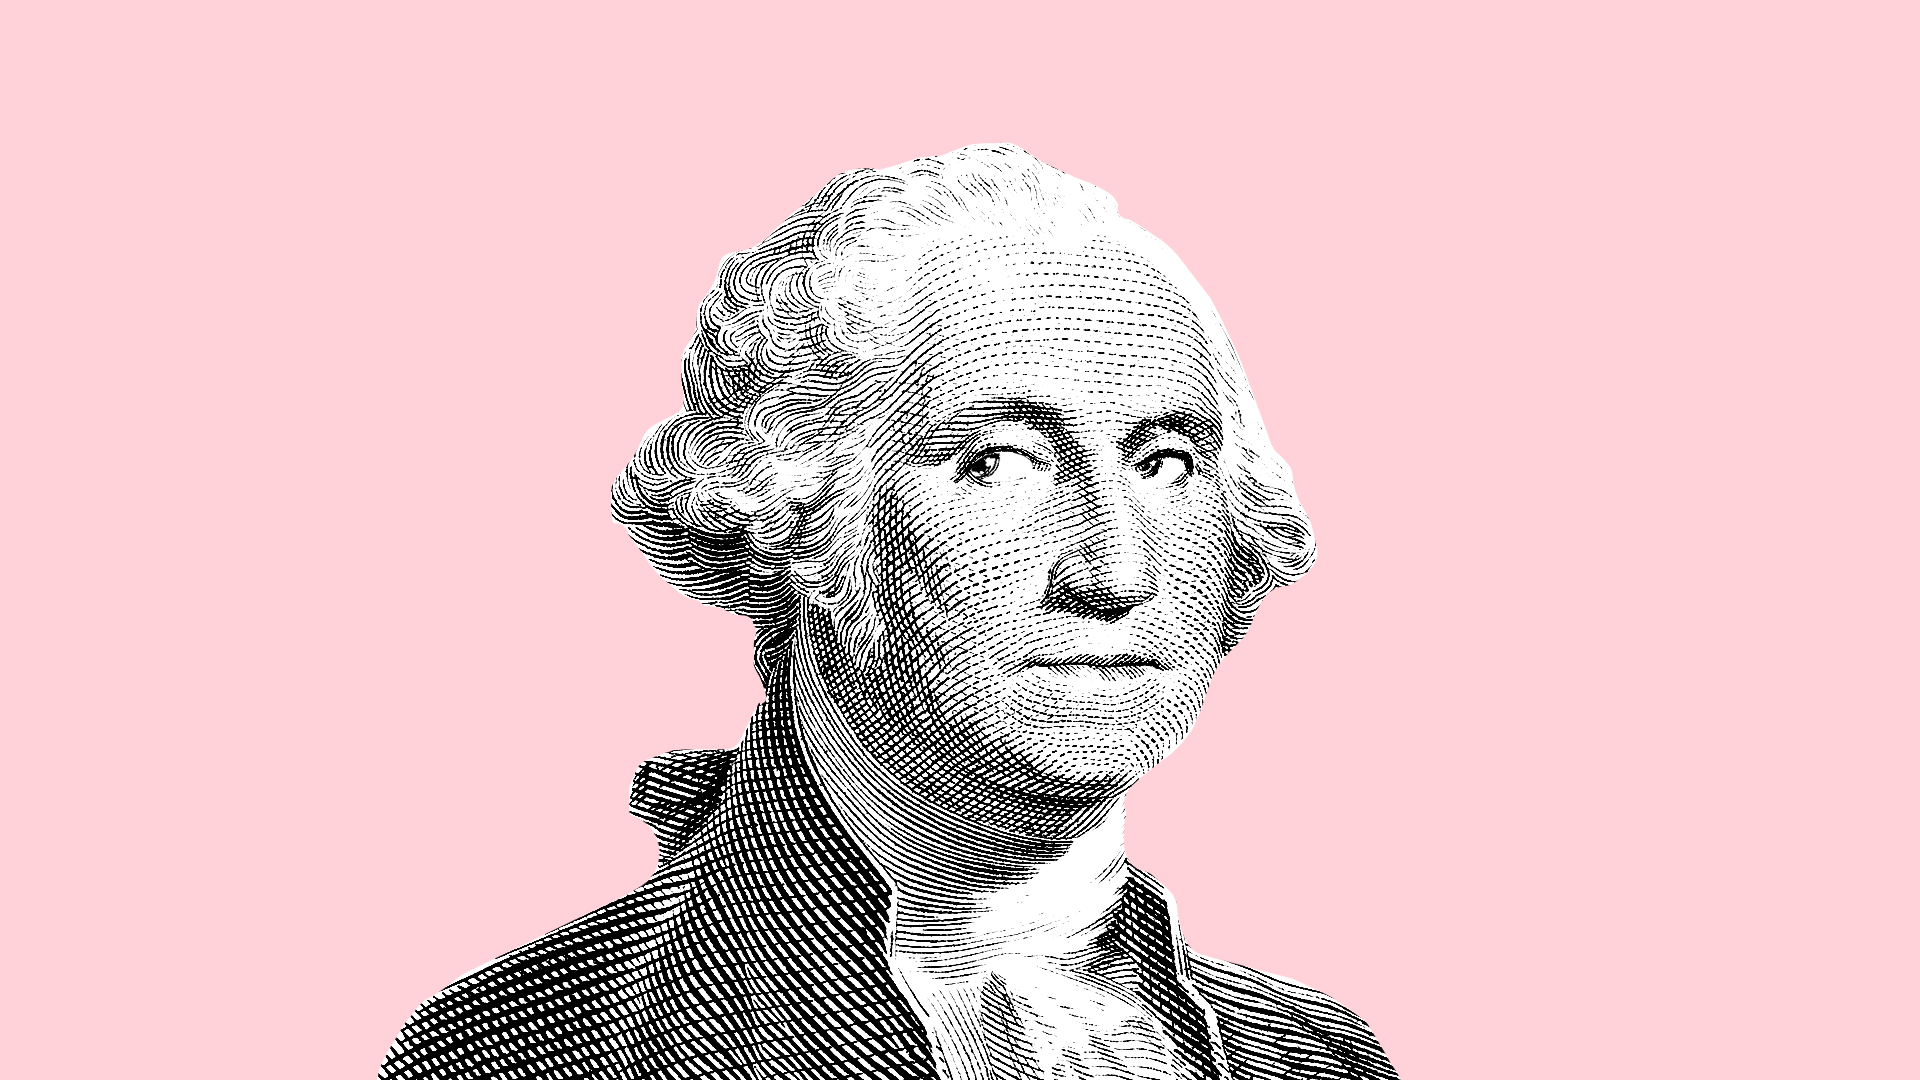 Gif of George Washington illustration with shifty eyes.